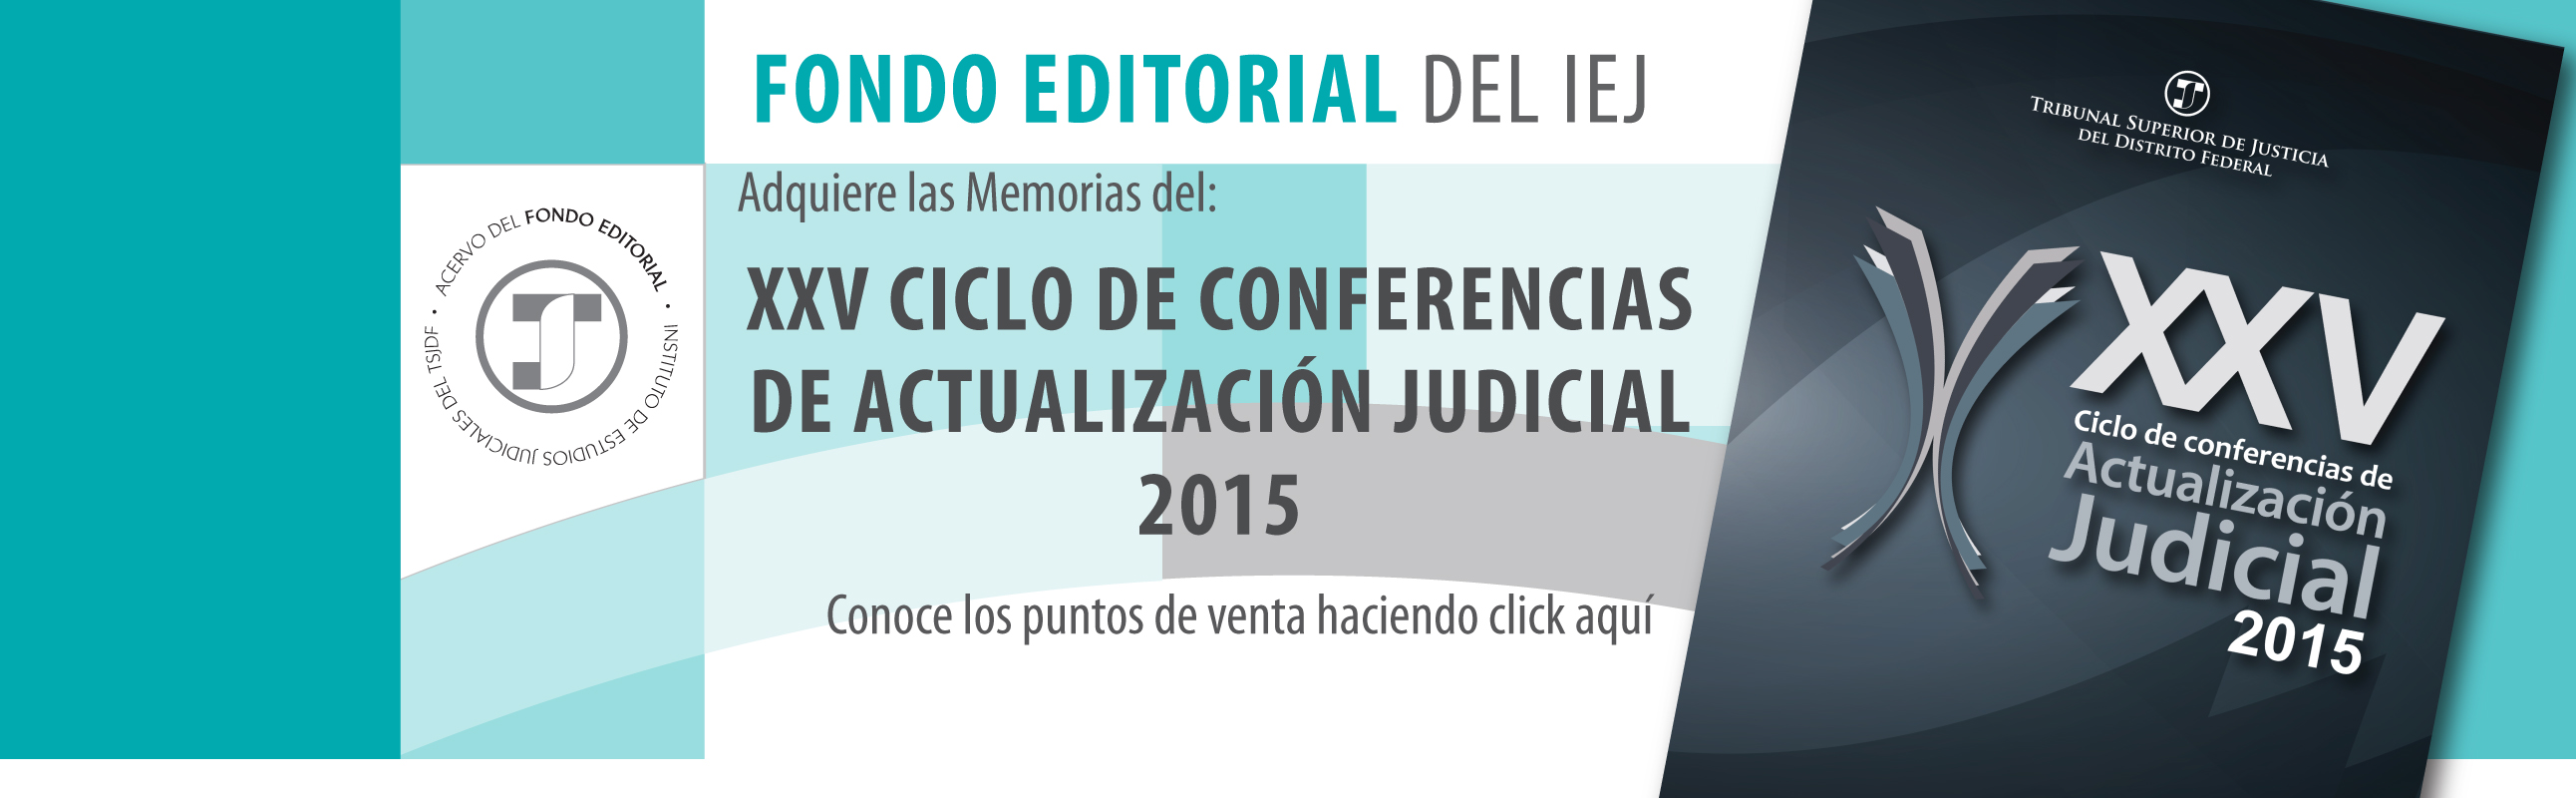 FONDO EDITORIAL DEL INSTITUTO DE ESTUDIOS JUDICIALES. ADQUIERE LAS MEMORIAS DEL; XXV CICLO DE CONFERENCIAS DE ACTUALIZACIÓN JUDICIAL 2015. CONOCE LOS PUNTOS DE VENTA HACIENDO CLICK AQUÍ